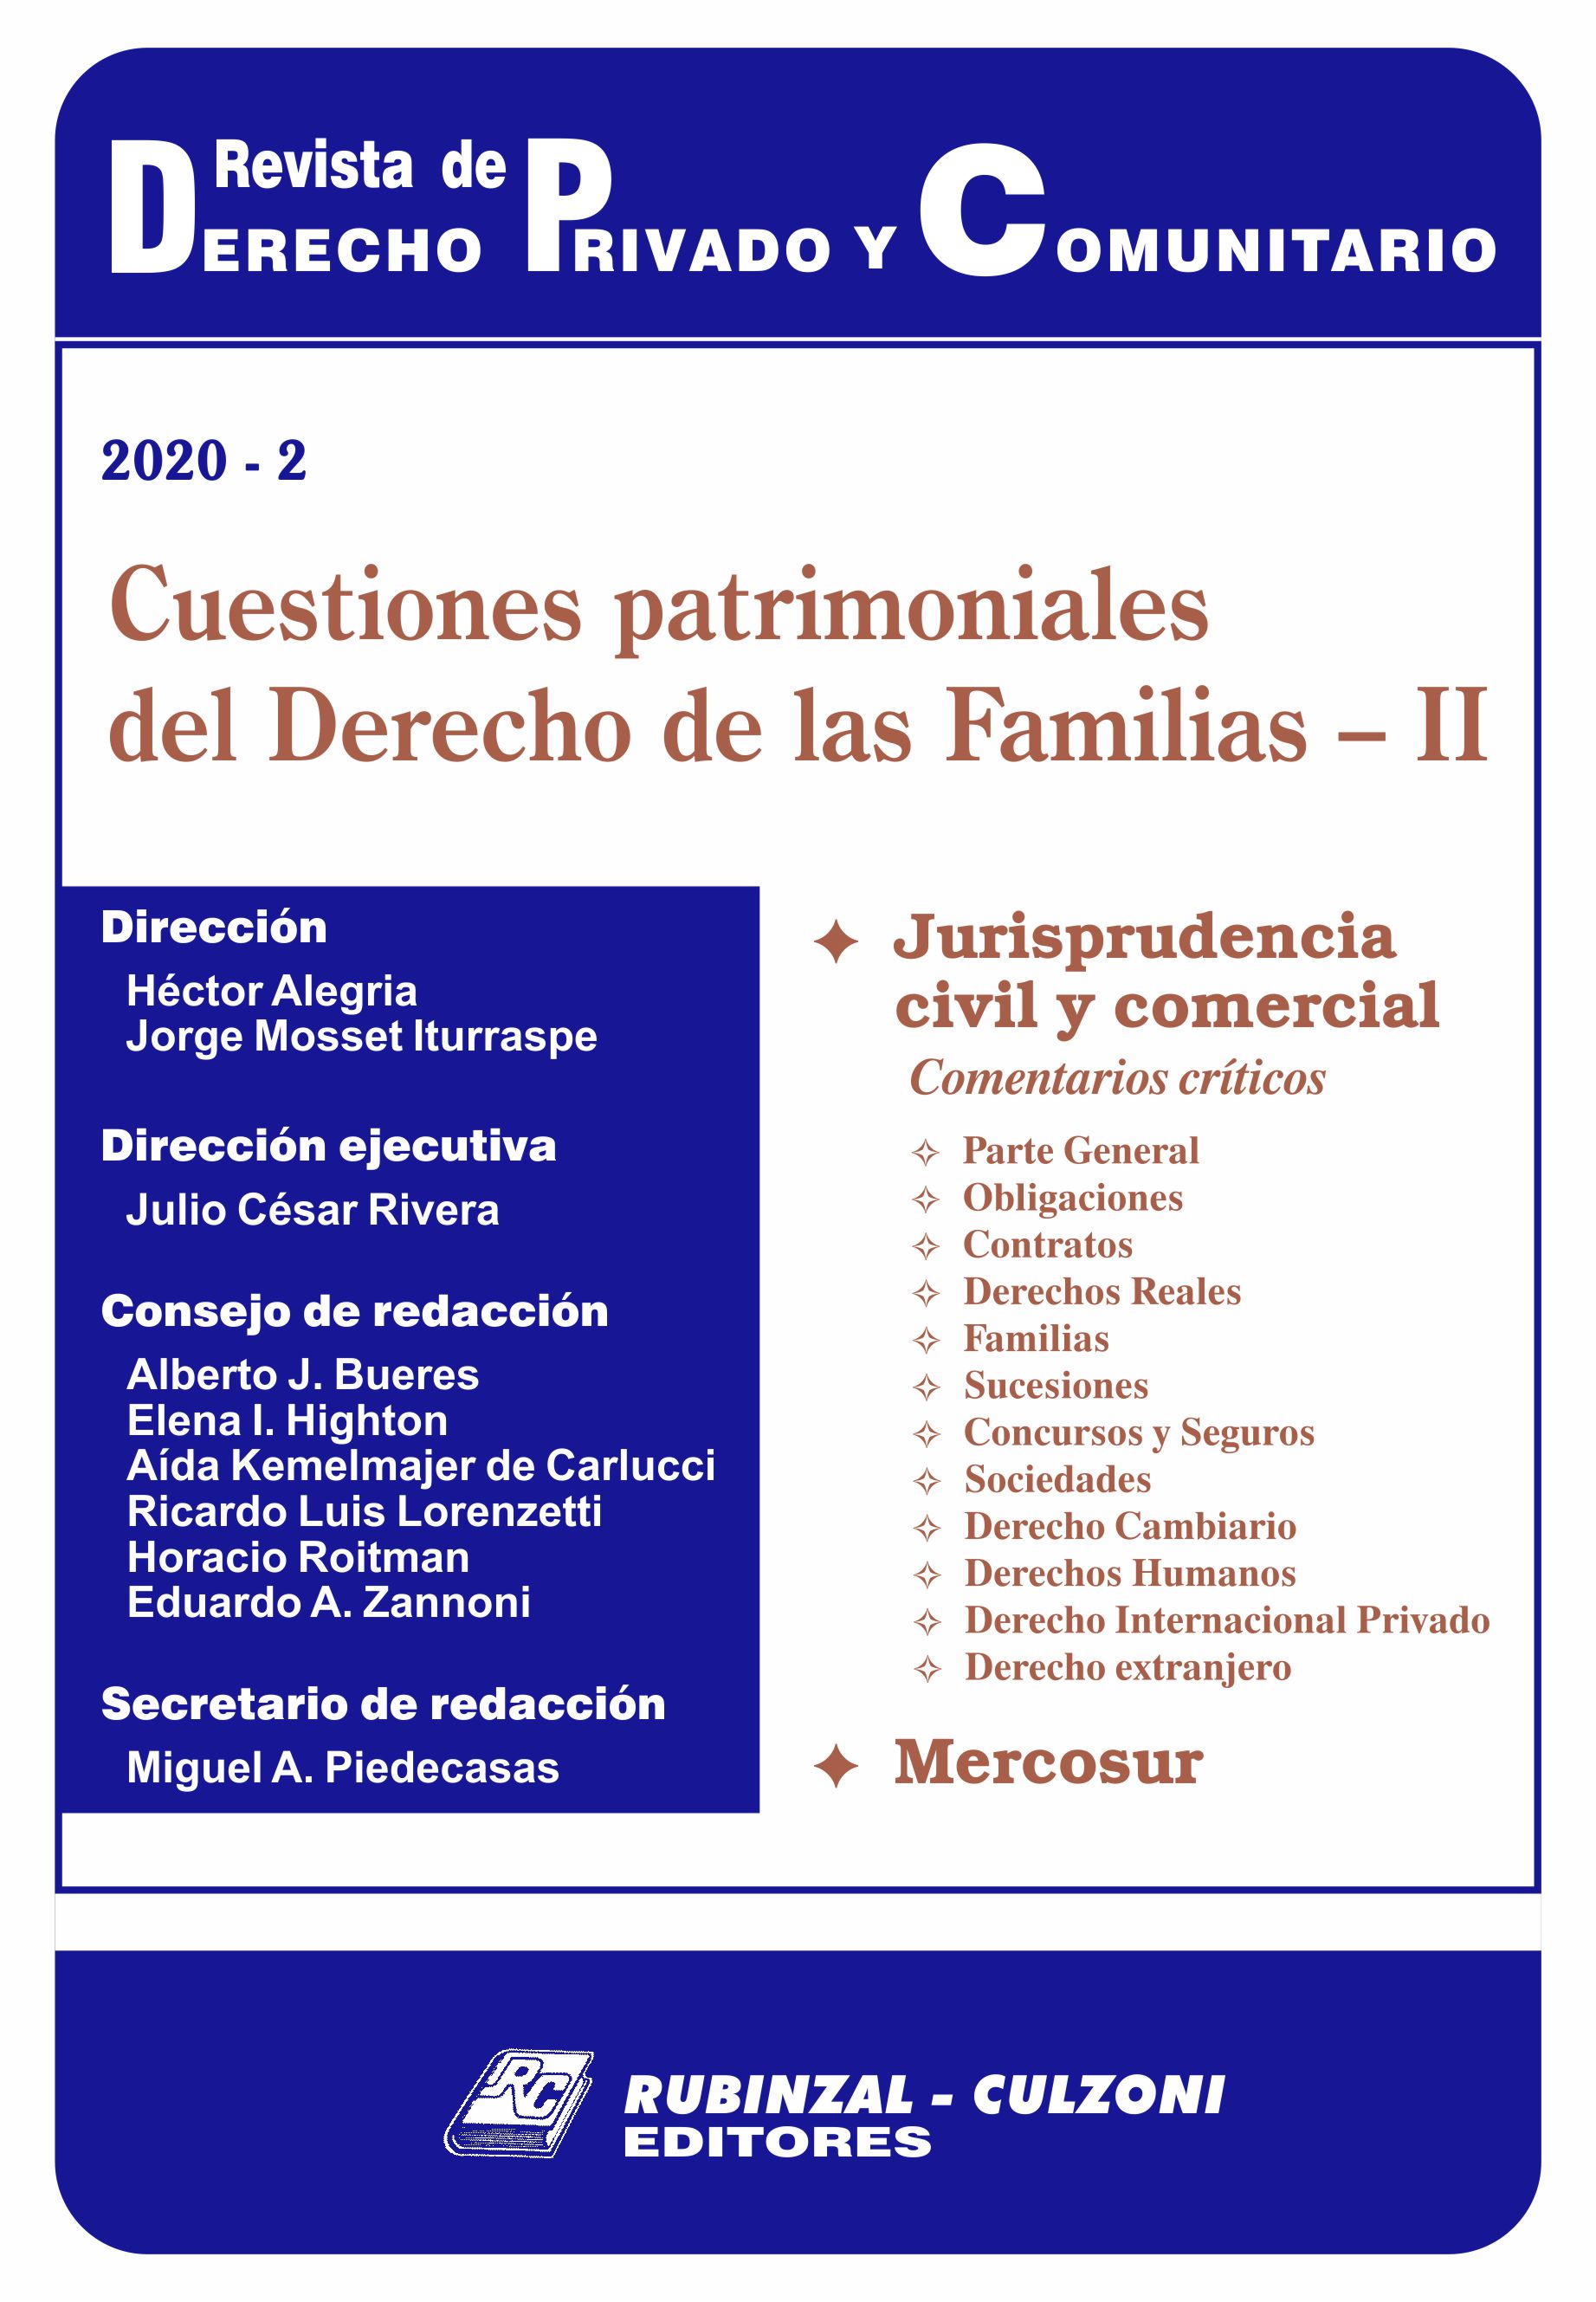 Revista de Derecho Privado y Comunitario - Cuestiones patrimoniales del Derecho de las Familias - II